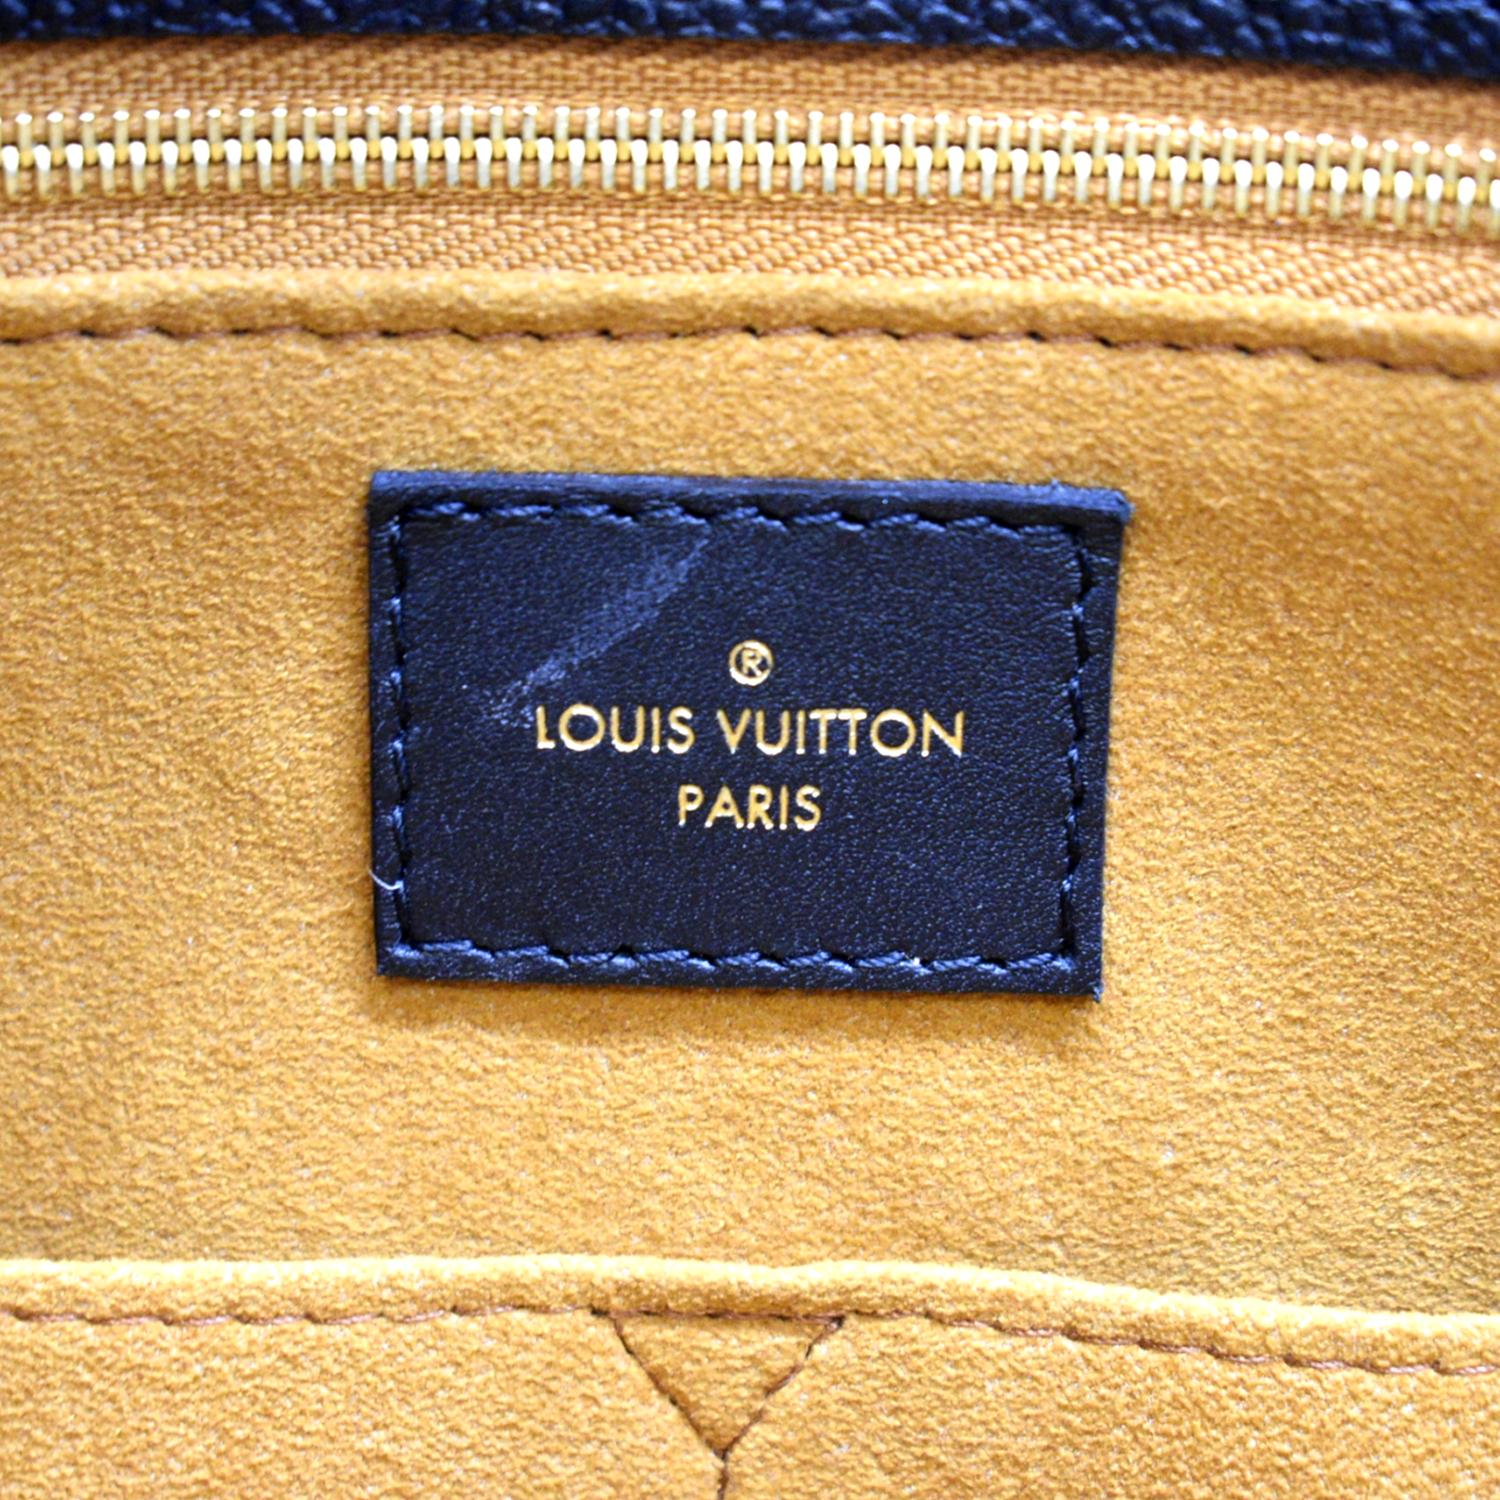 LOUIS VUITTON Onthego MM Giant Monogram Empreinte Leather Tote Bag Bla